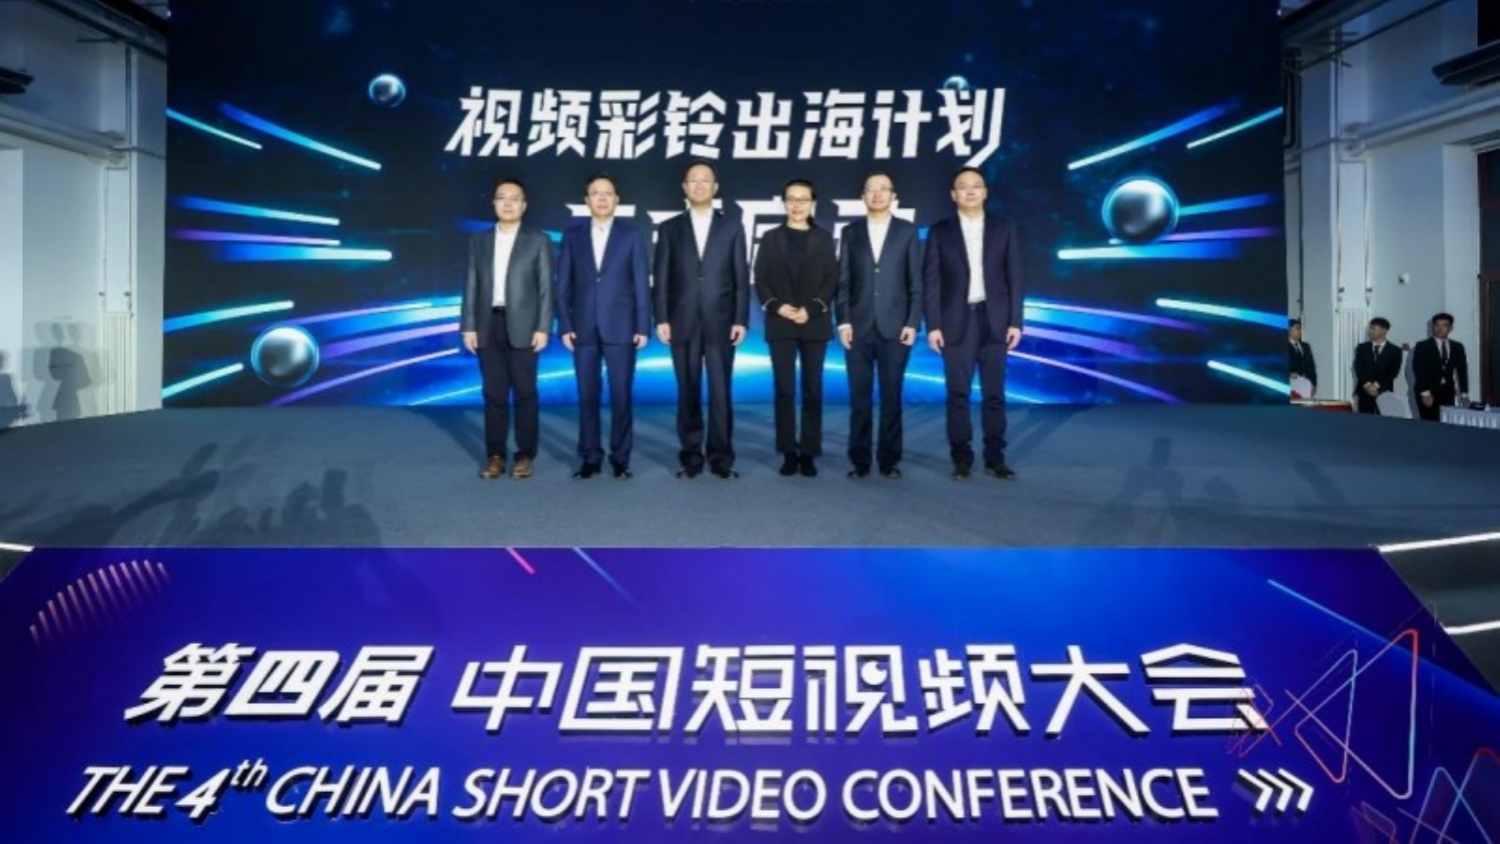 第四屆中國短視頻大會開幕 香港首通視頻彩鈴電話成功撥出